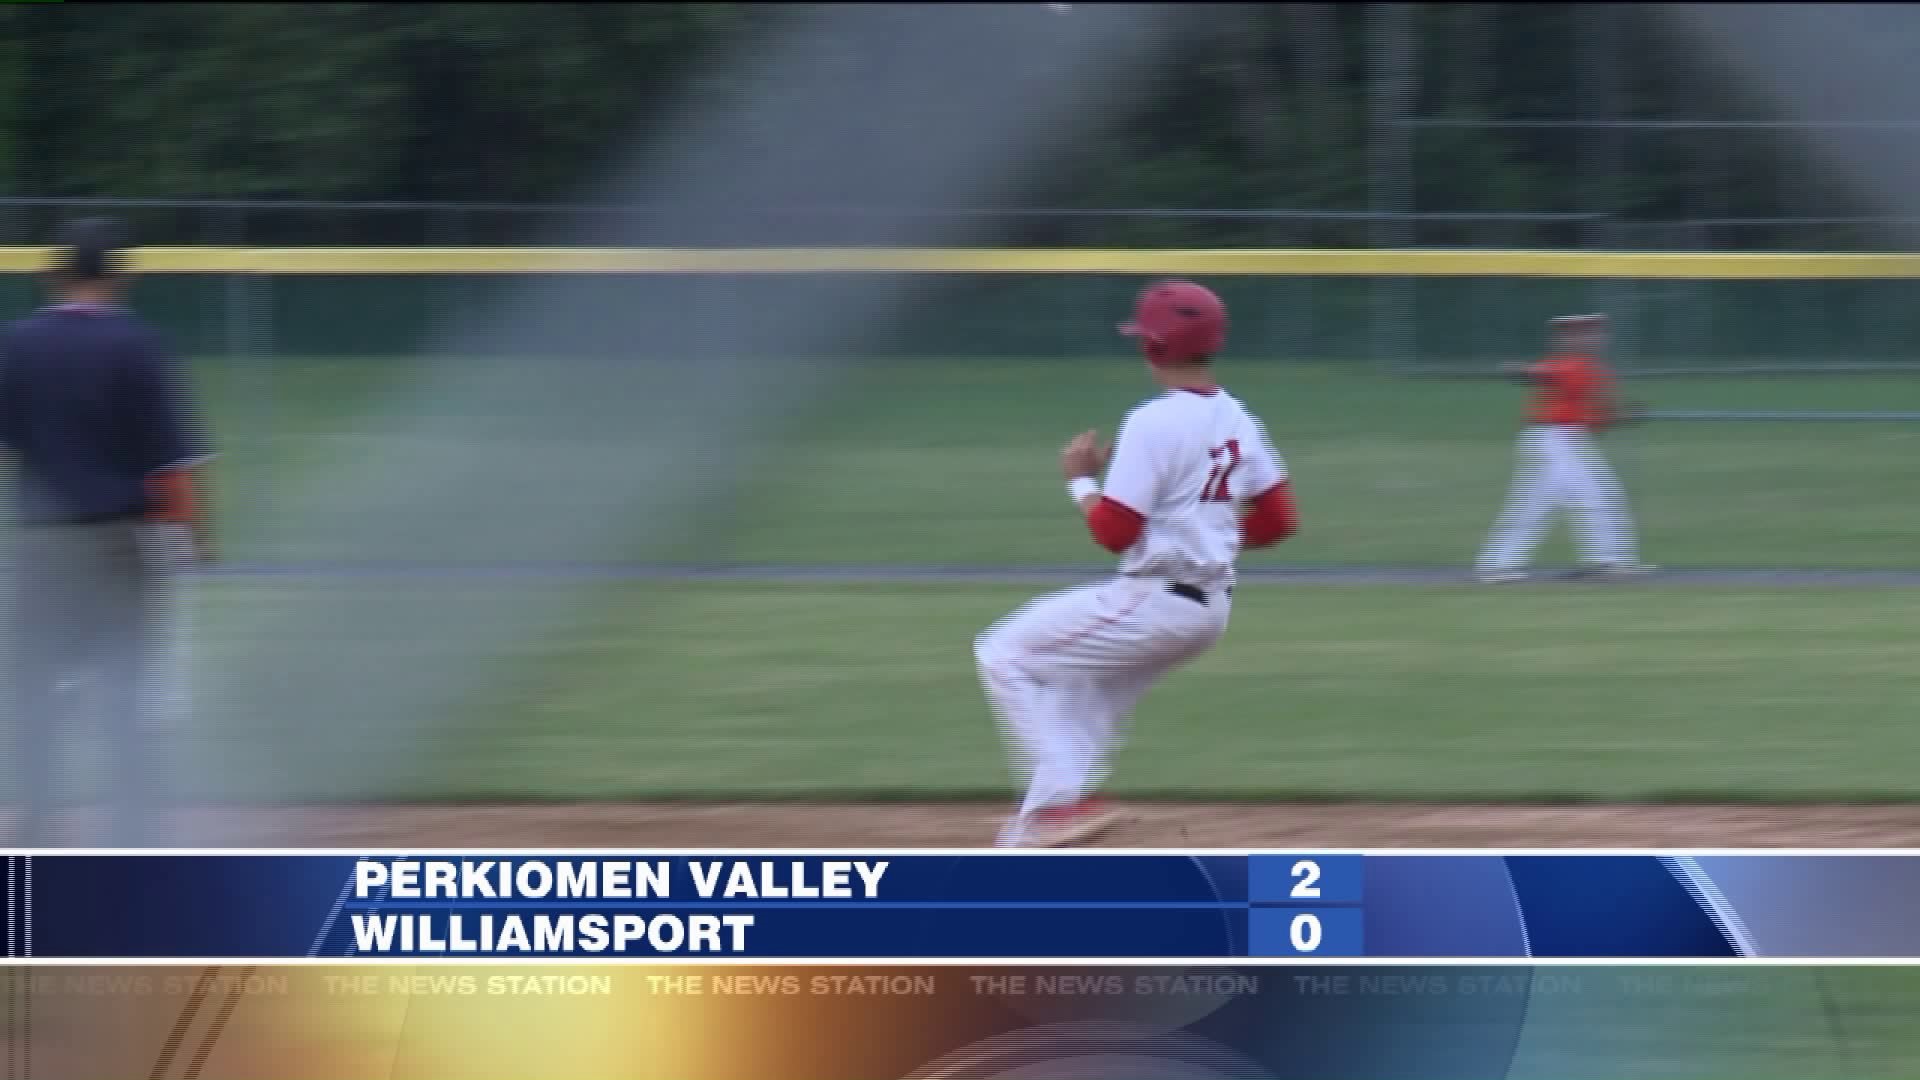 Perkiomen Valley vs Williamsport baseball